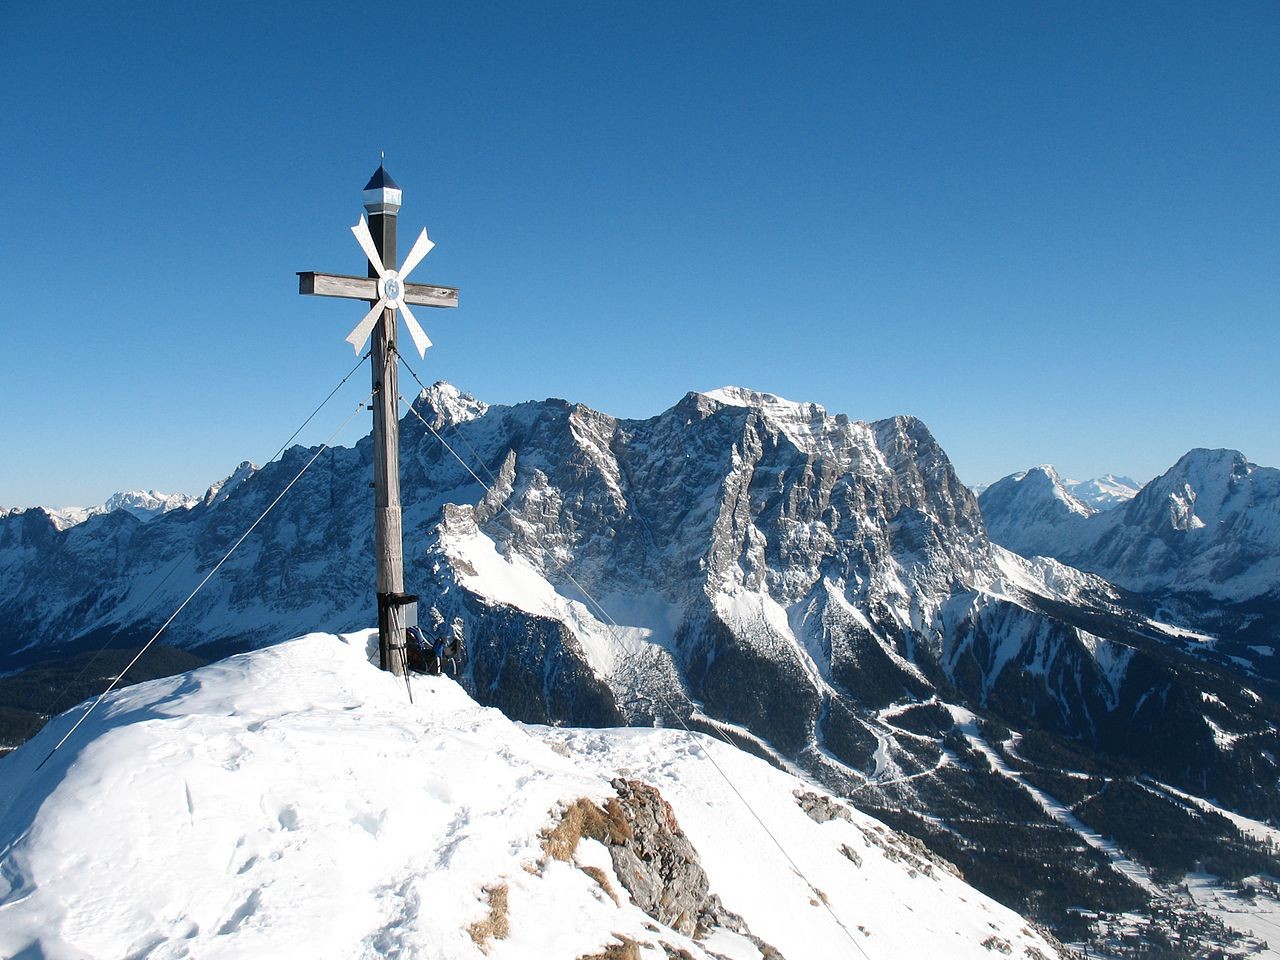 Die höchsten Berge in den Ammergauer Alpen